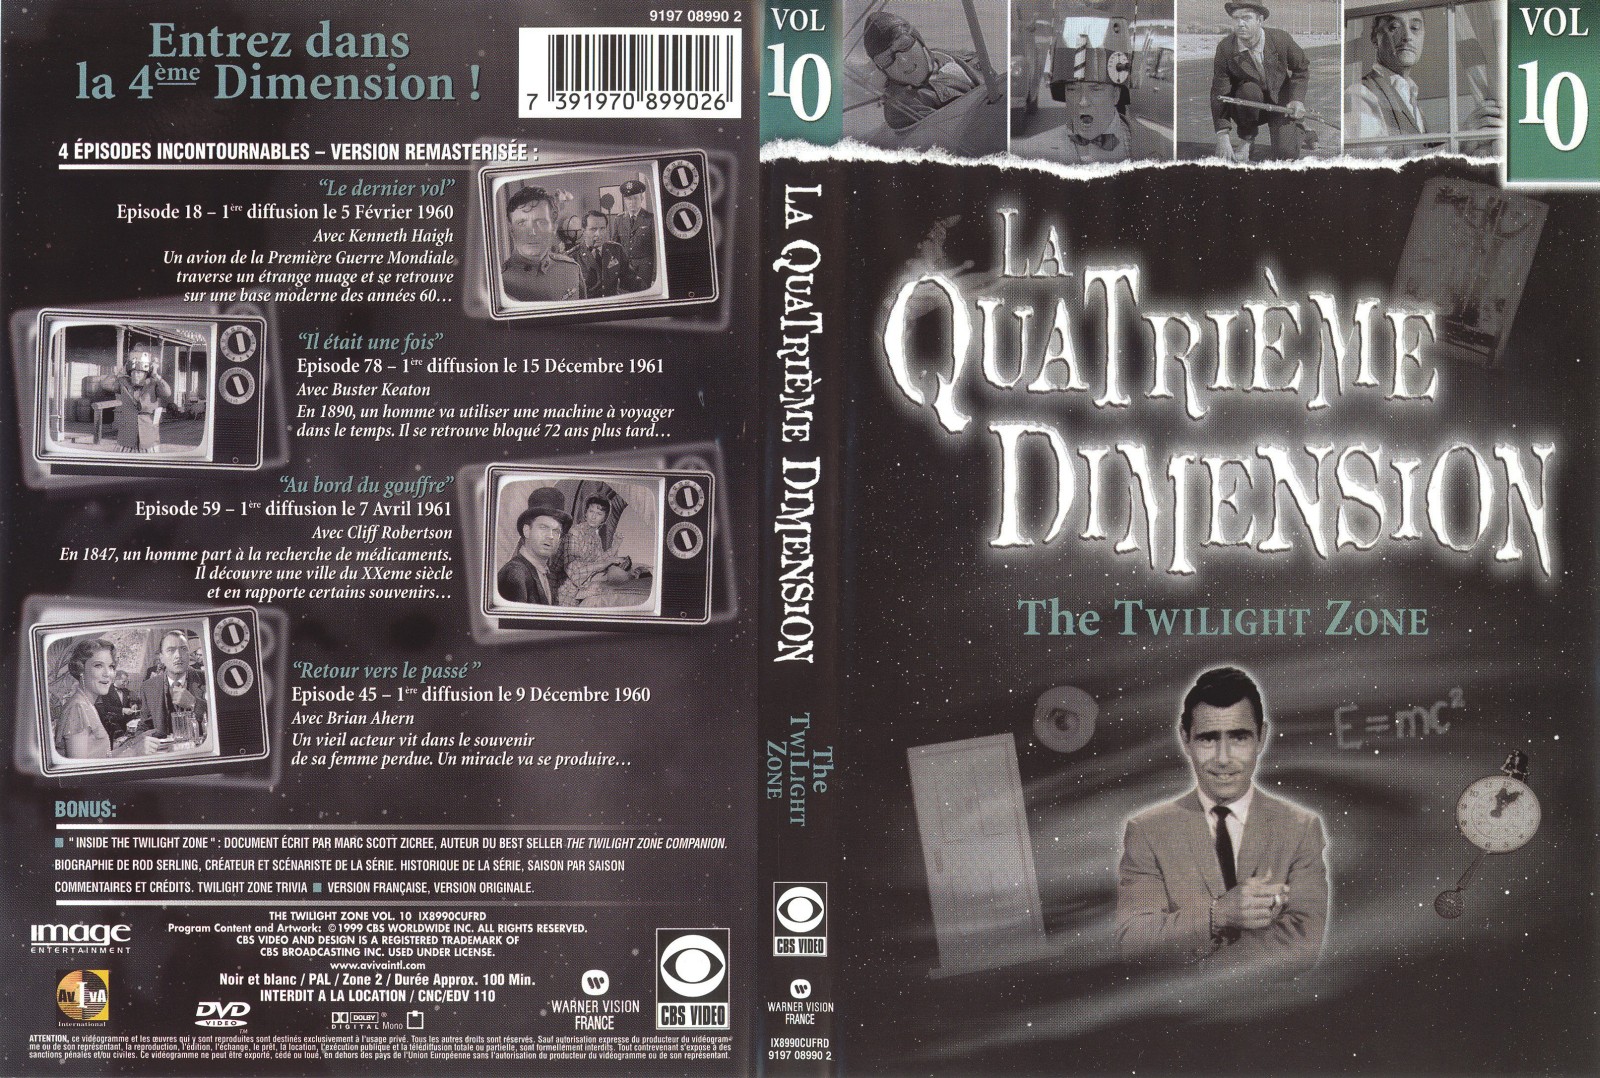 Jaquette DVD La quatrieme dimension vol 10